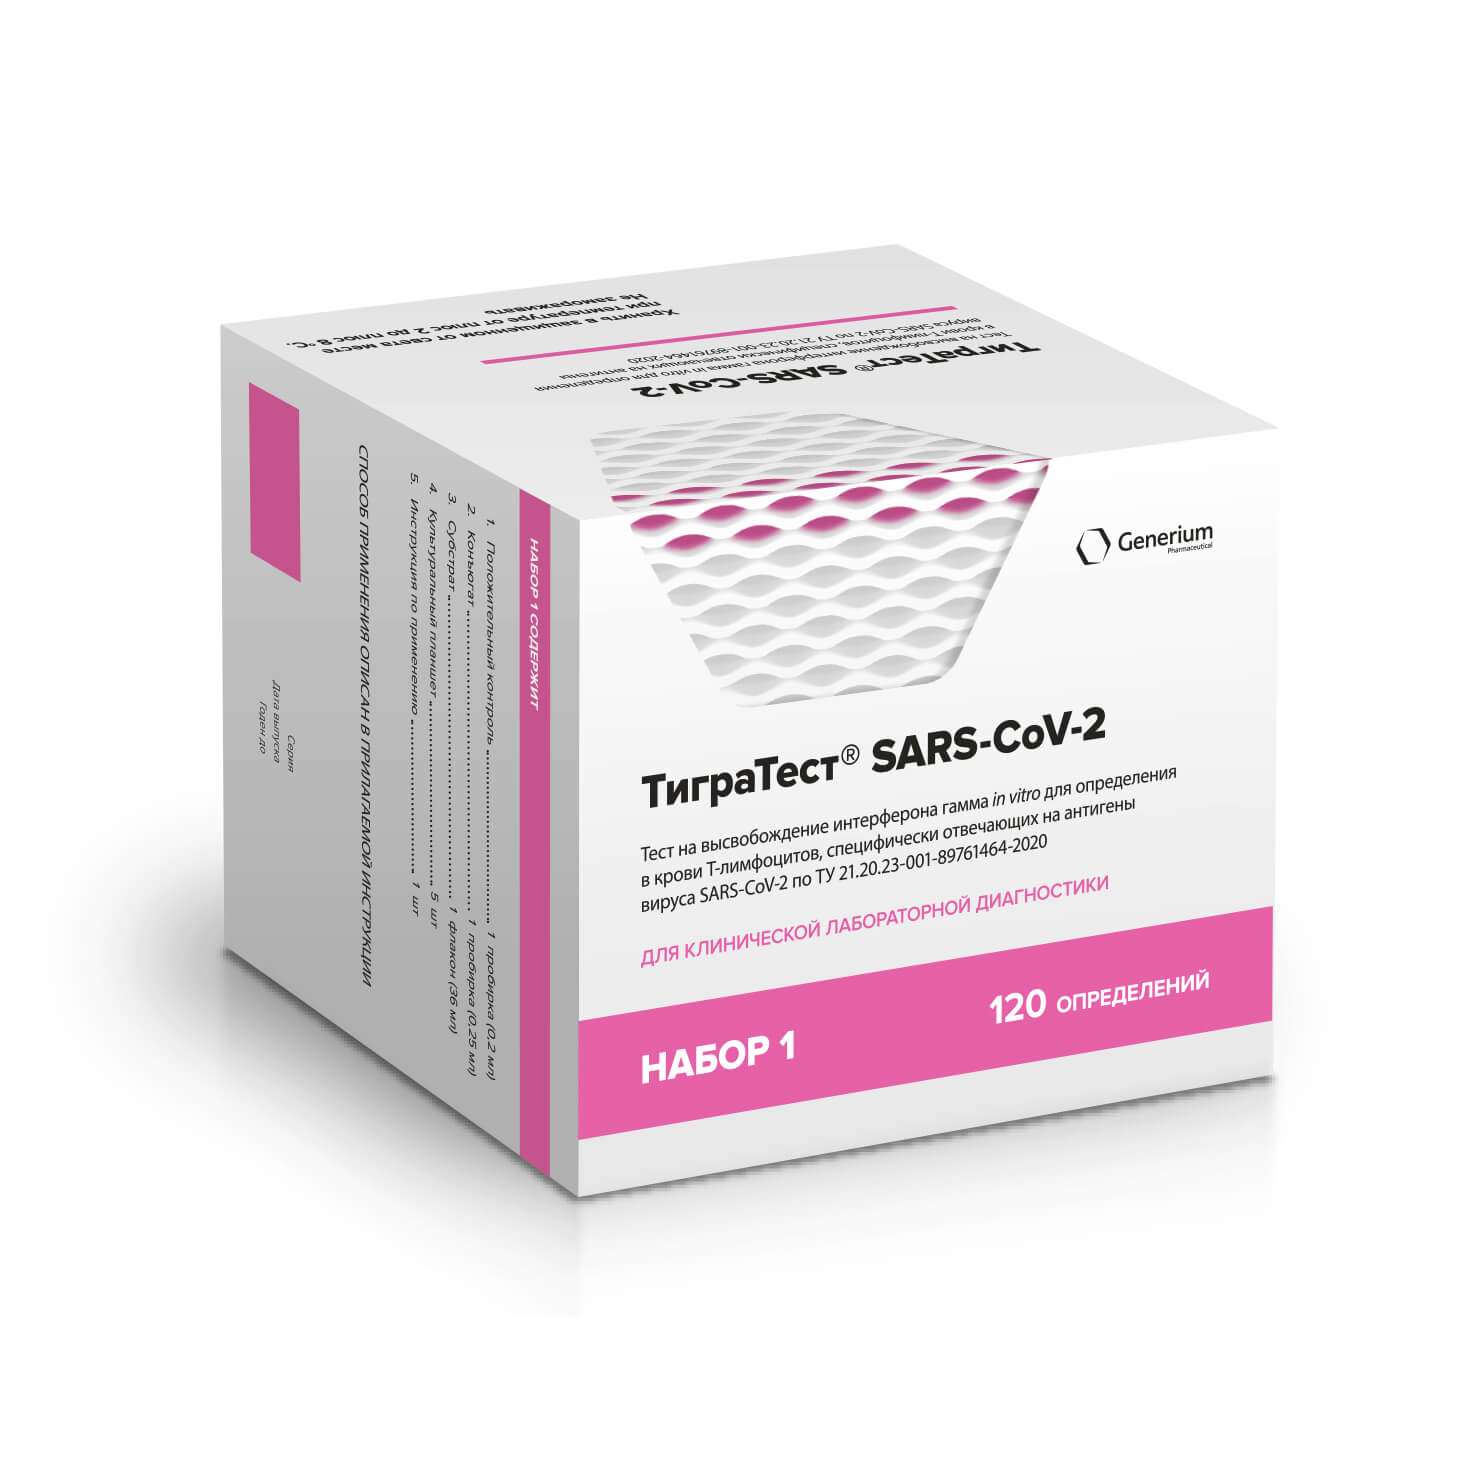 TigraTest® SARS-CoV-2